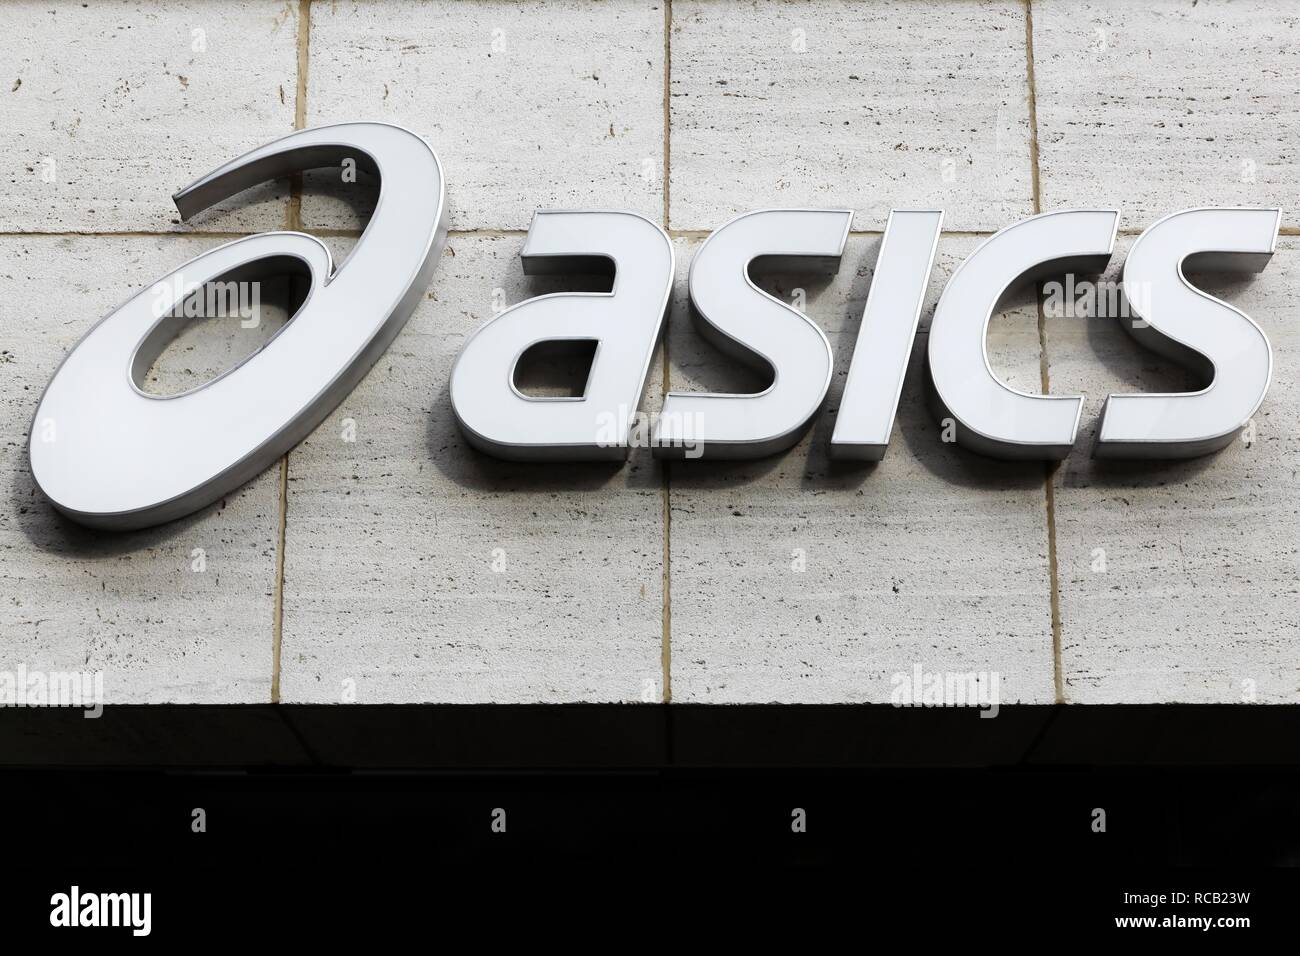 París, Francia - 25 de marzo de 2016: Asics logotipo en una pared. Asics es  una empresa multinacional japonesa que produce calzado y material deportivo  Fotografía de stock - Alamy